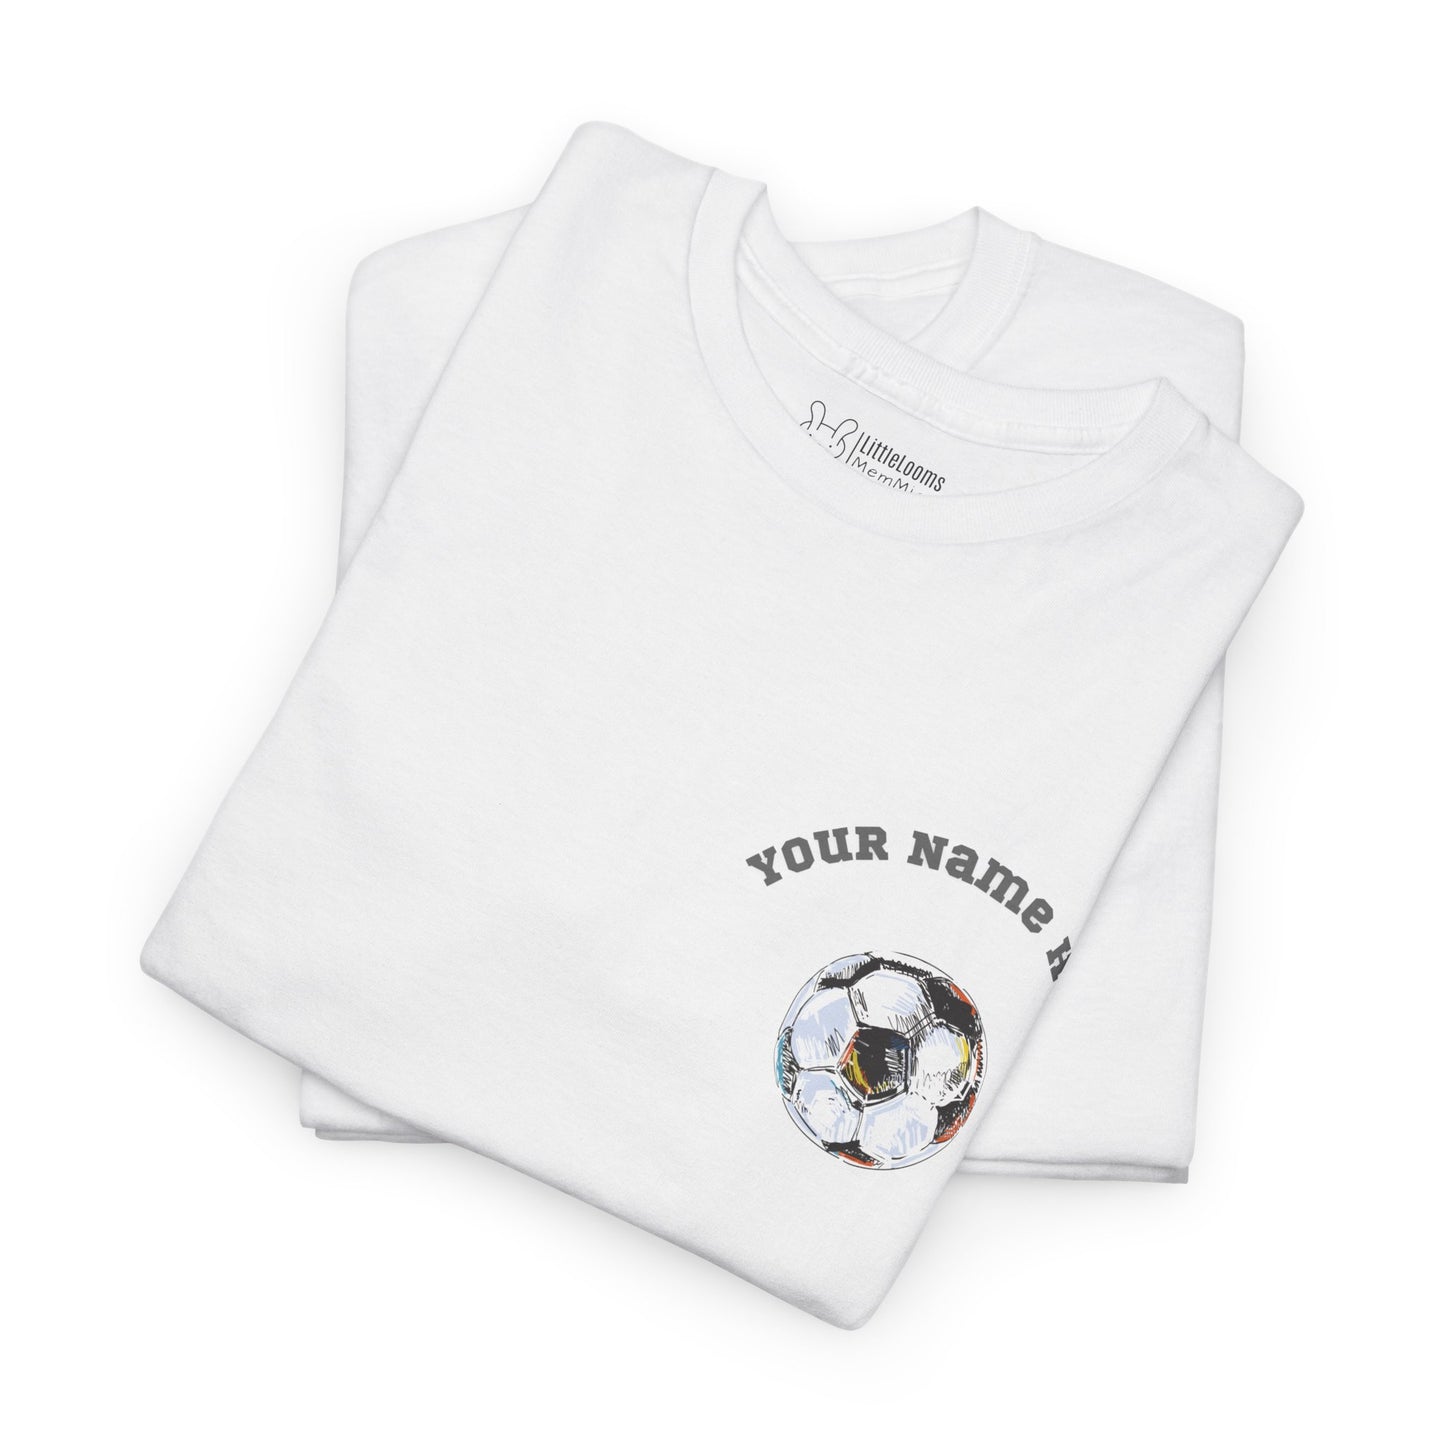 Camiseta unisex manga corta personalizable. Diseño de pelota de fultbo y para personalizar con un nombre.